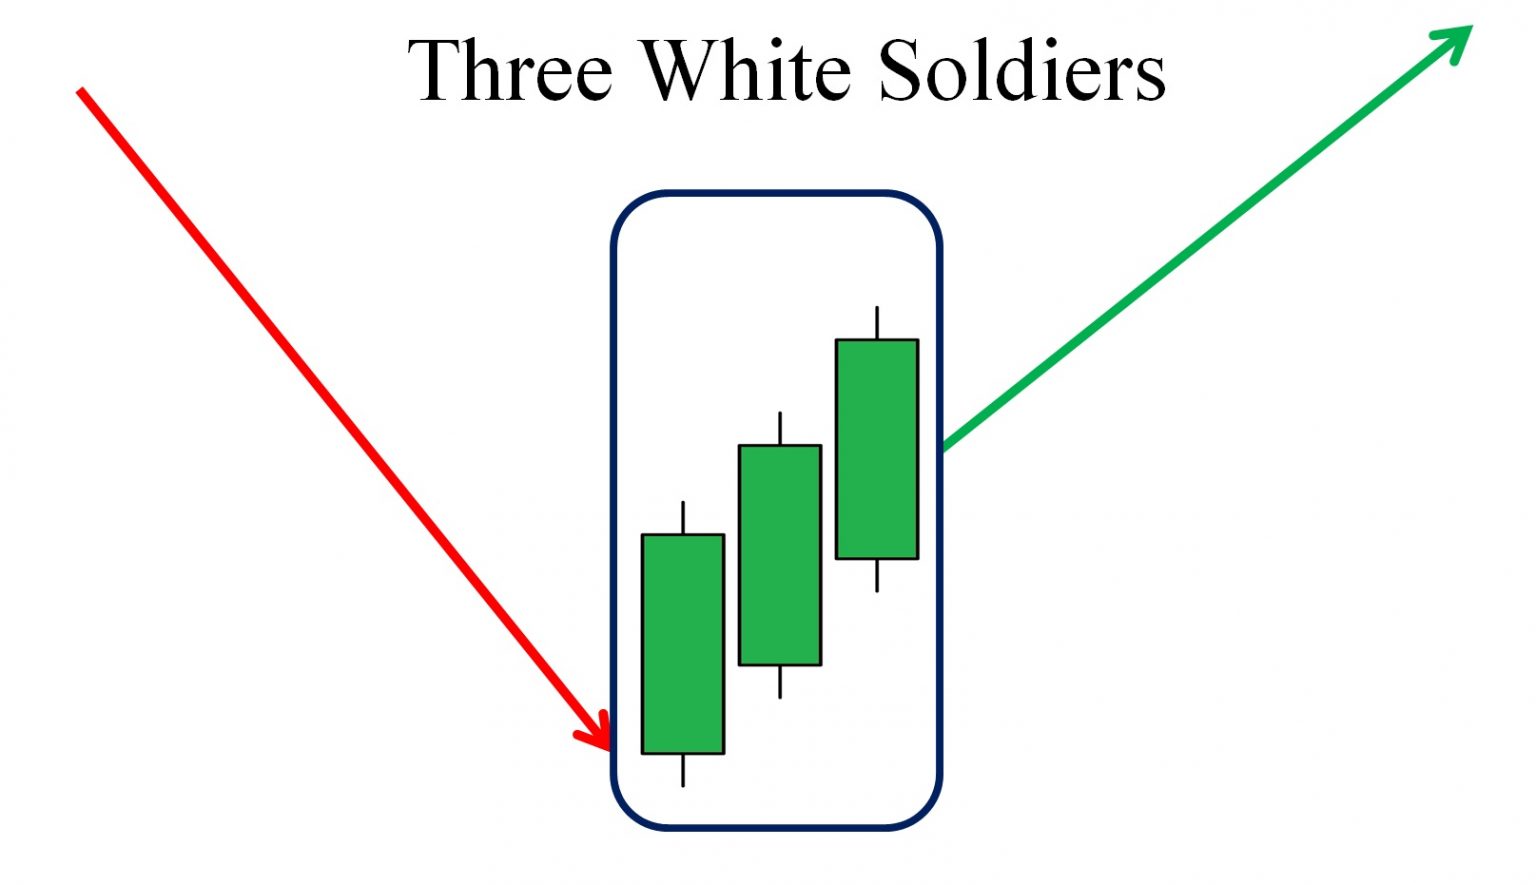 Qual é o padrão de castiçal dos Três Soldados Brancos?